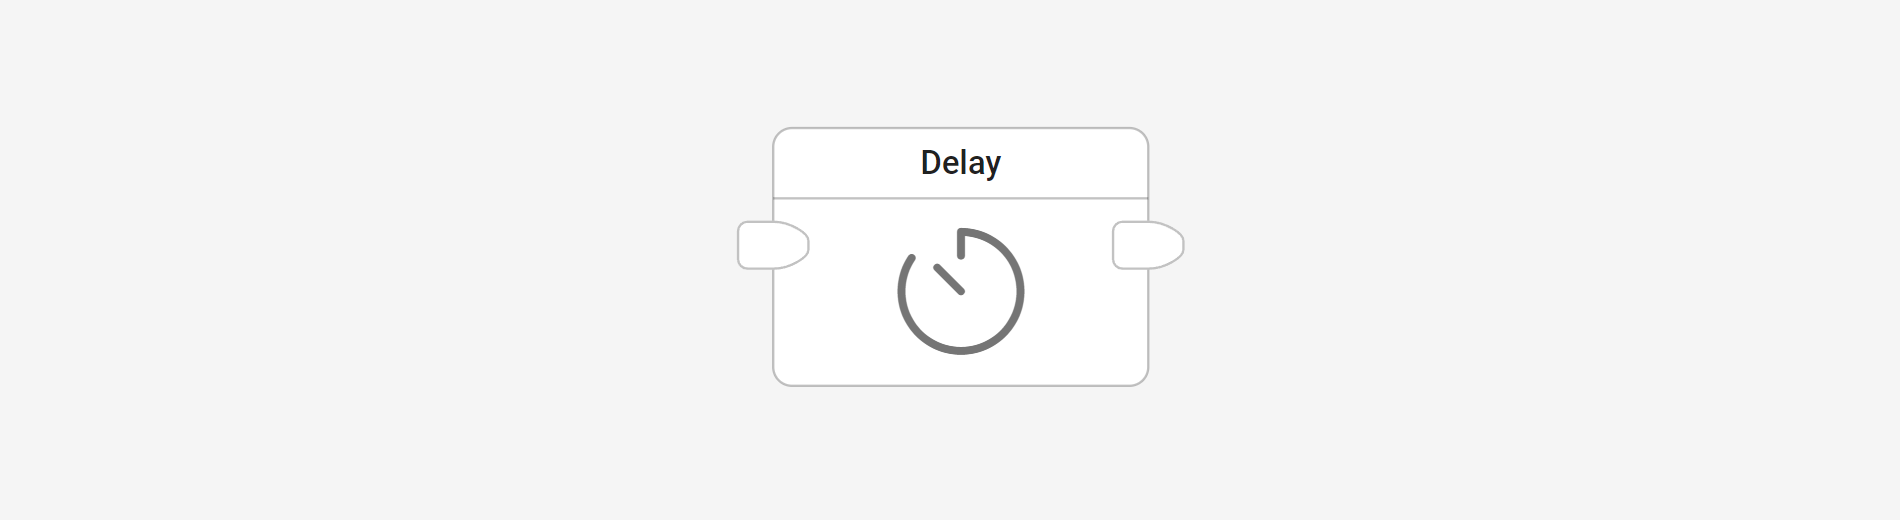 Delay block in flow editor